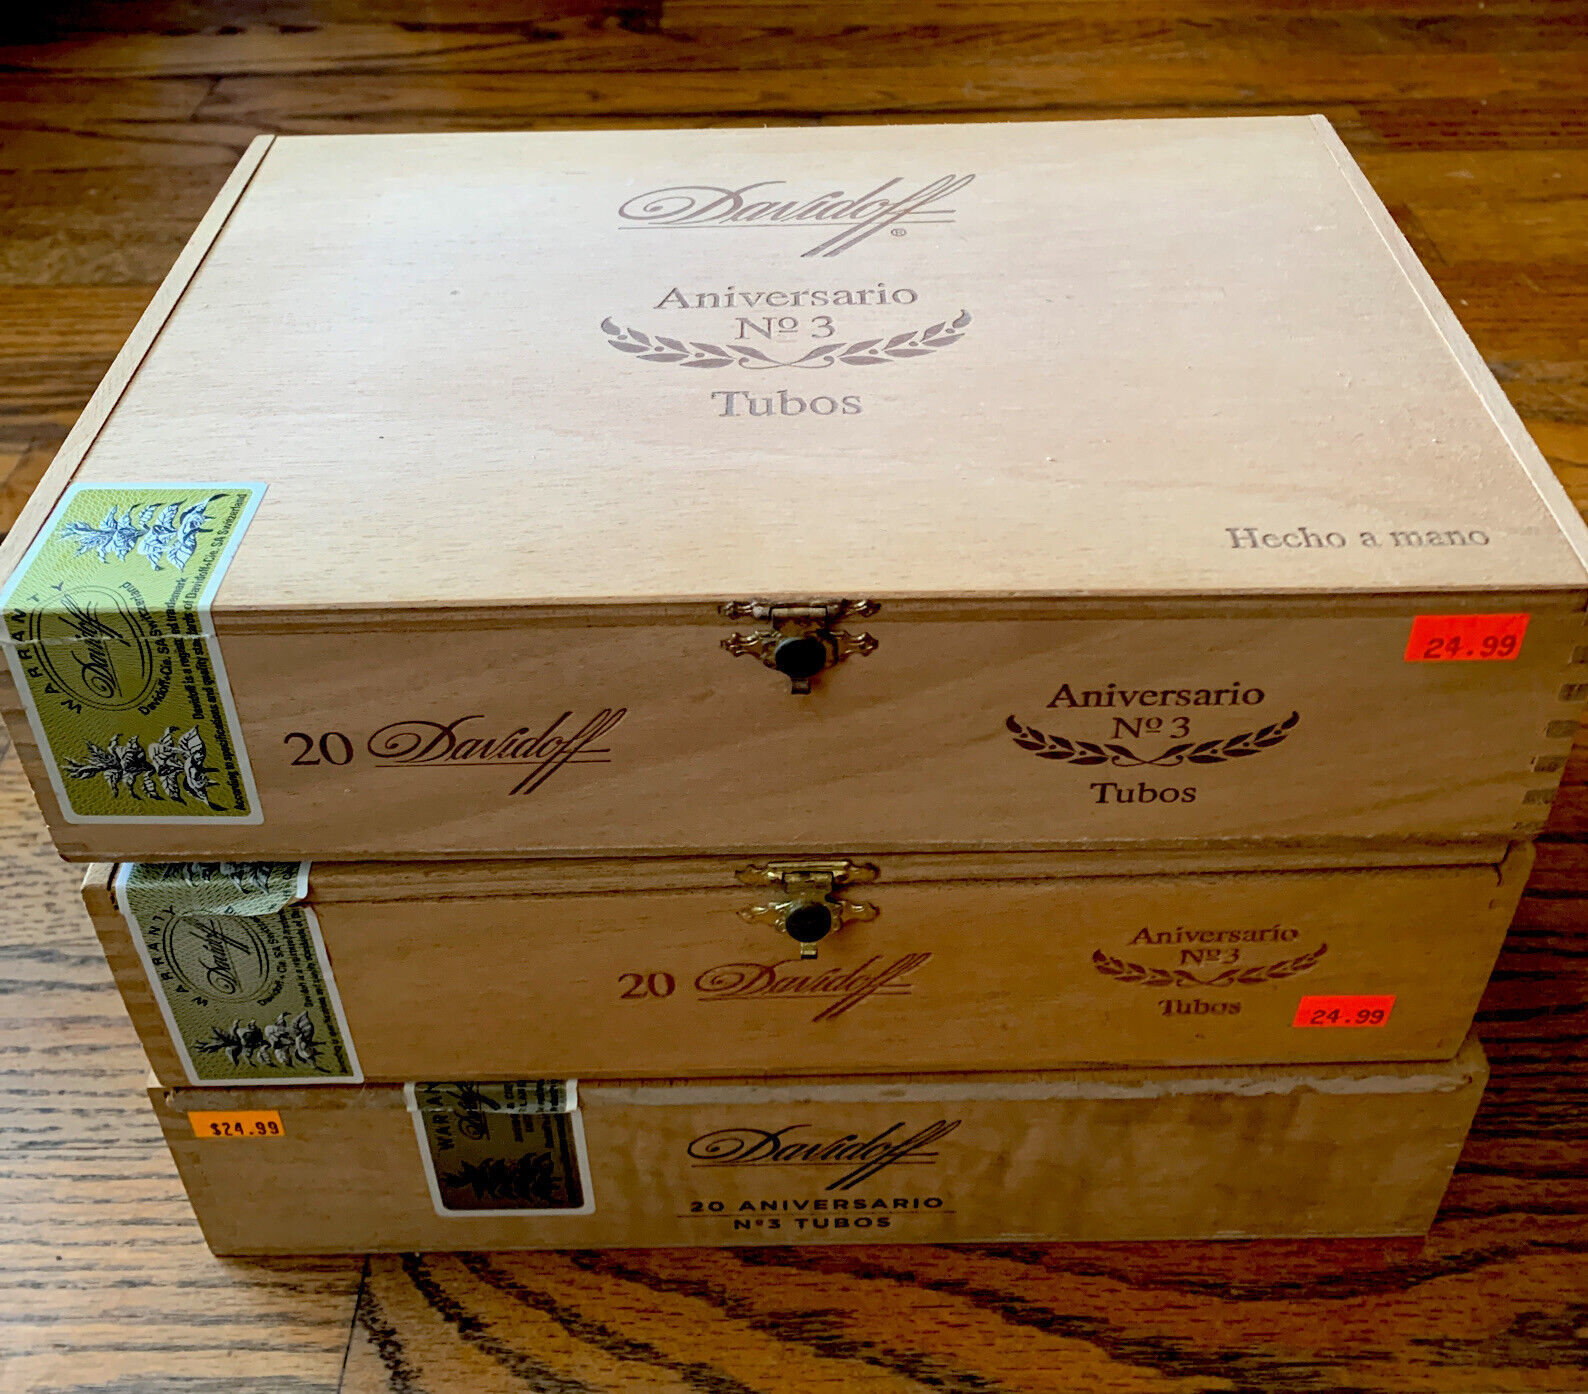 Davidoff Churchill Aniversario No 3 Tubos Cigar Box 10.25”x7”x2.5”